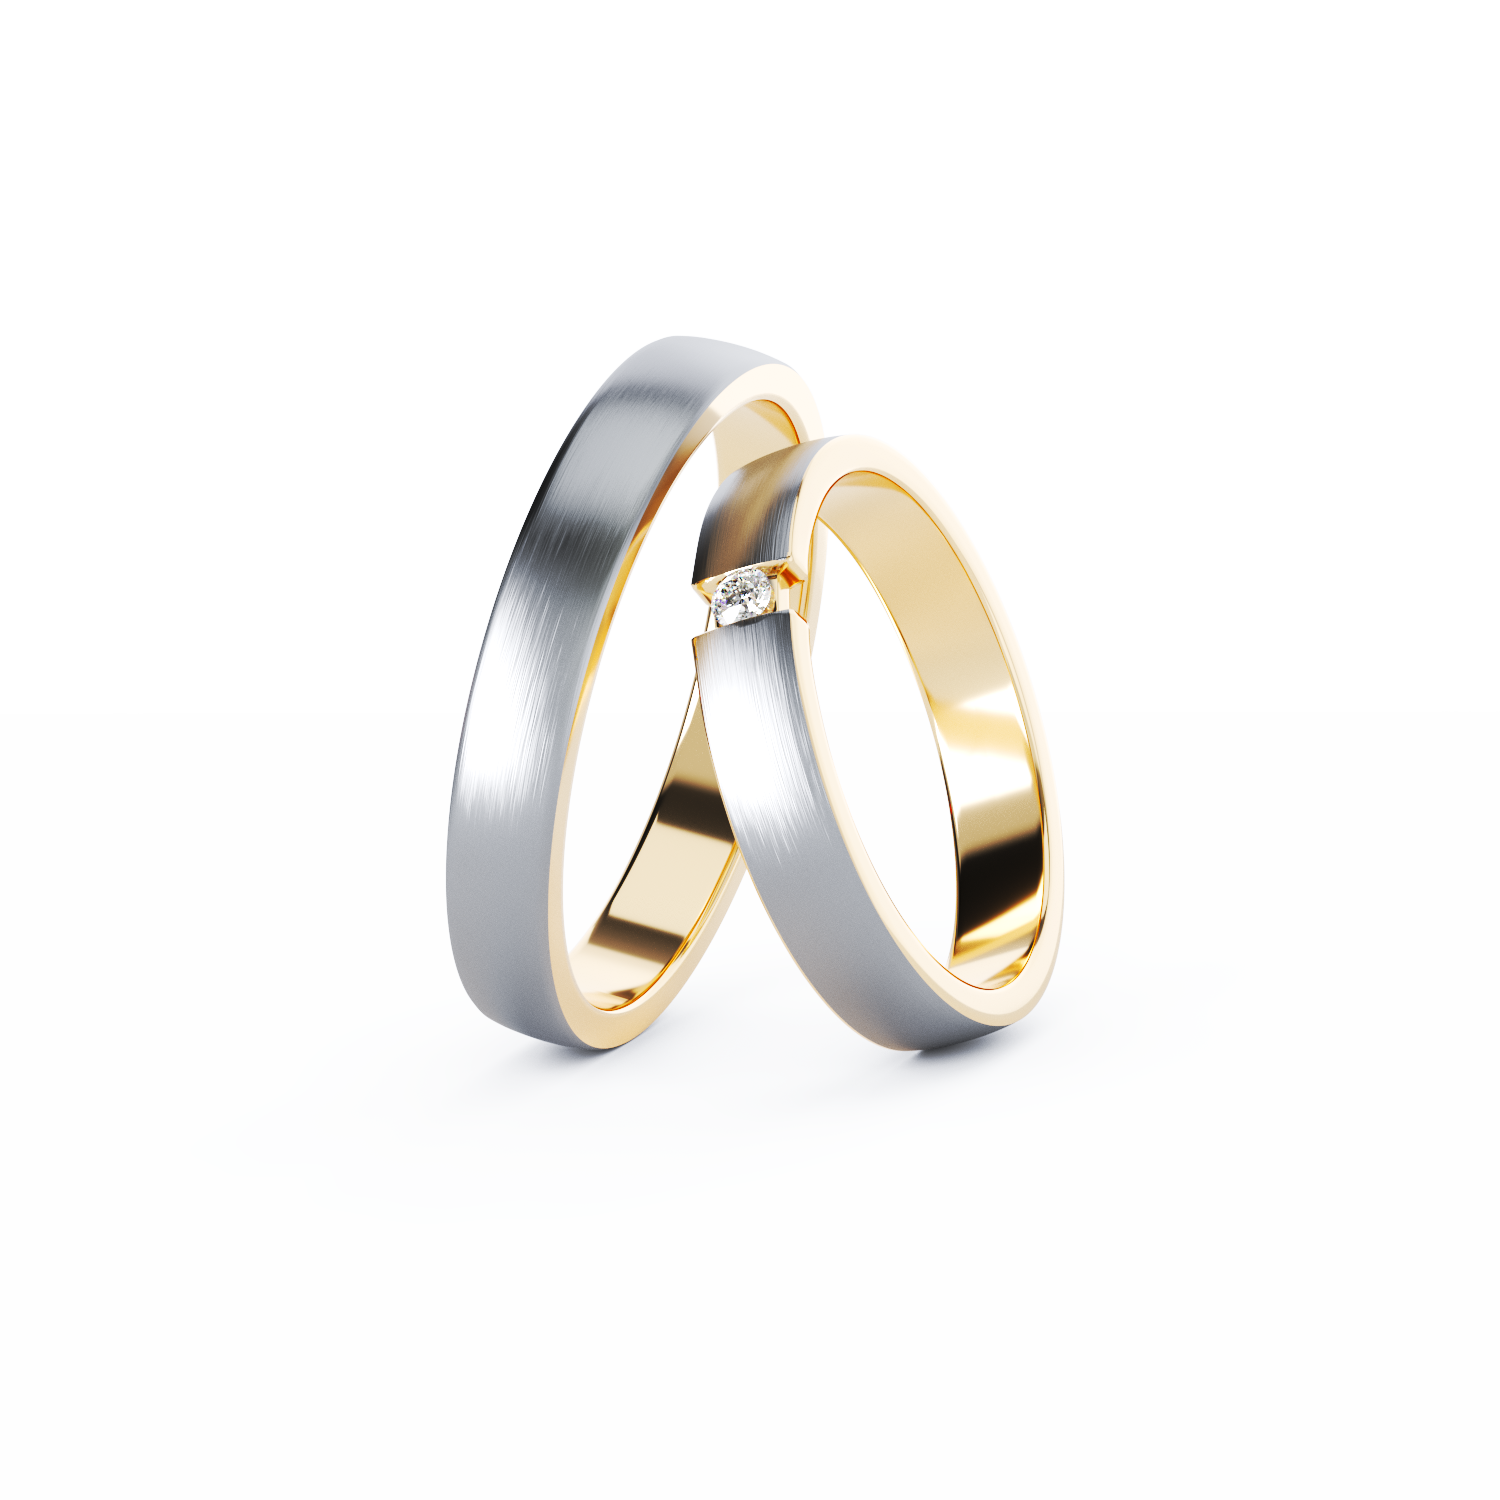 BESPOKE gold wedding rings